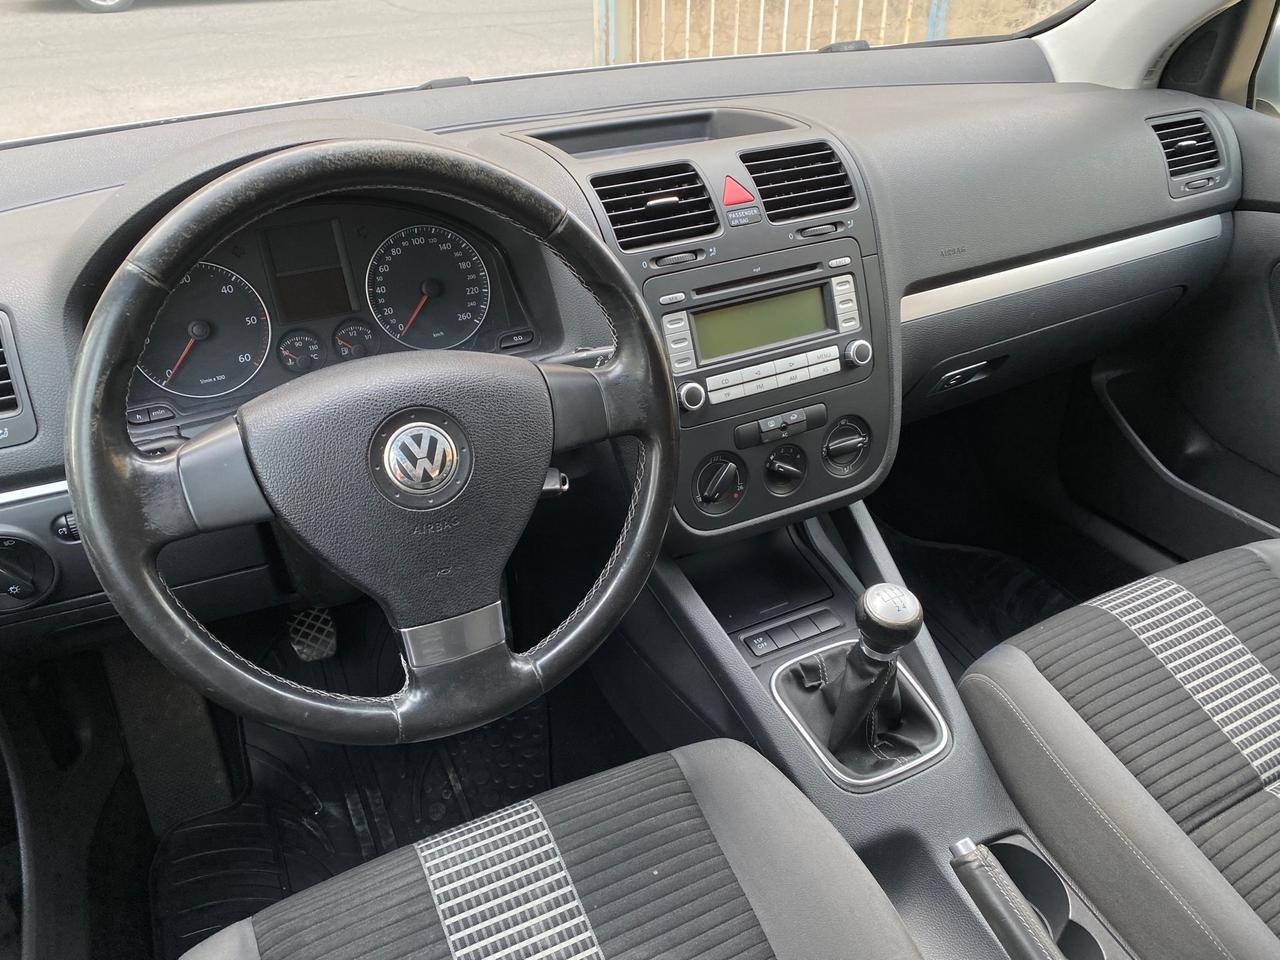 Volkswagen Golf 1.9 TDI - Comfortline